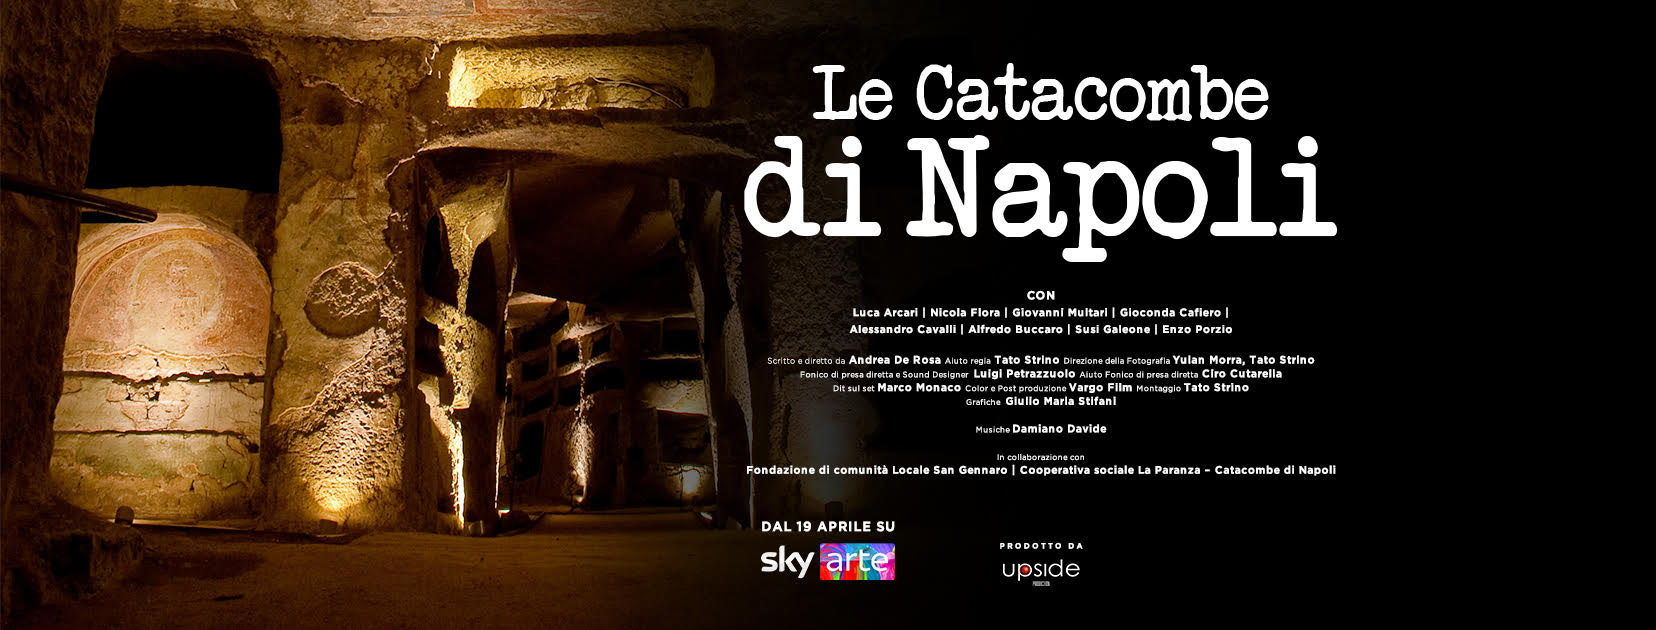 Le Catacombe di Napoli